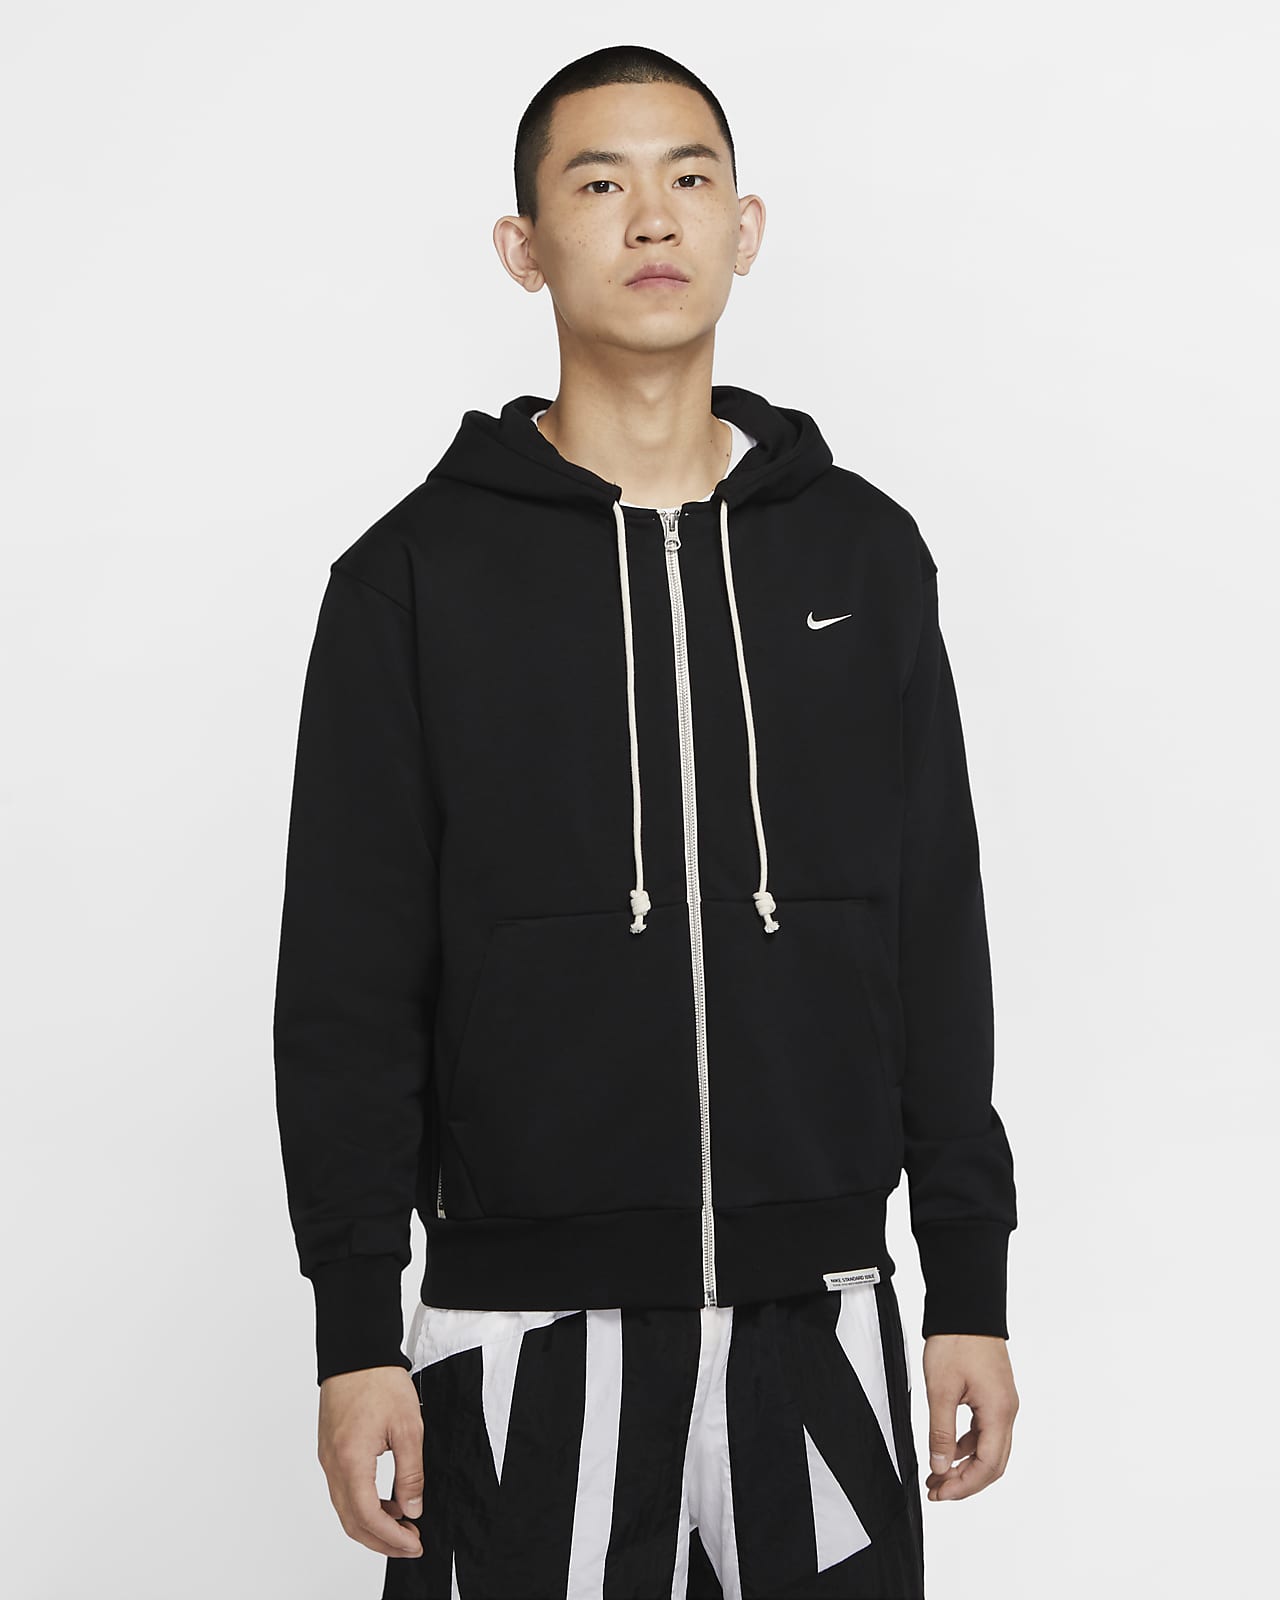 Nike Basketball hoodie in black